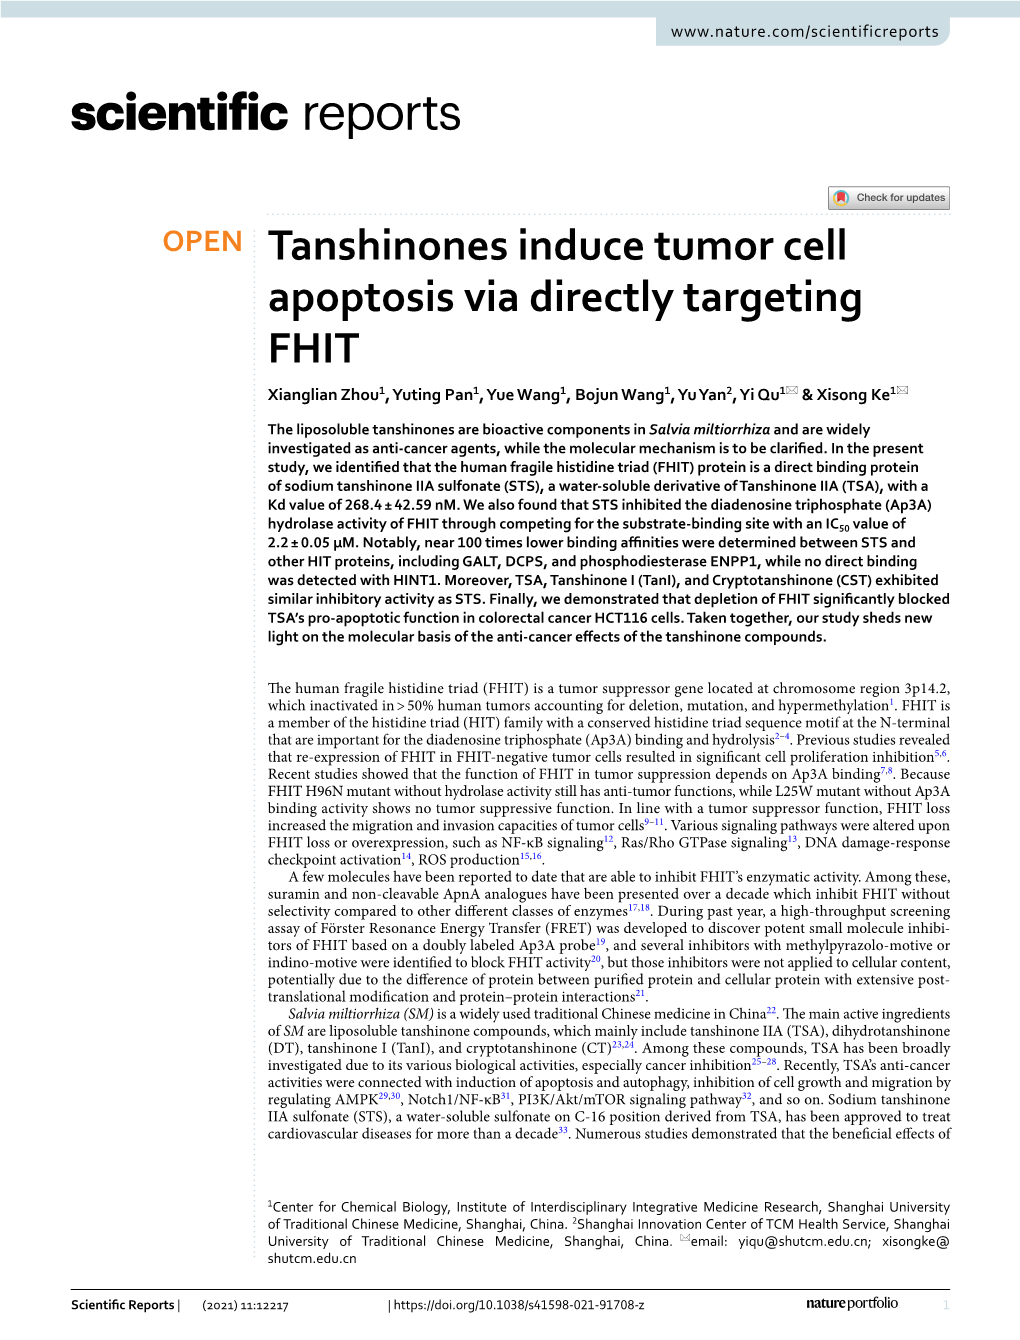 Tanshinones Induce Tumor Cell Apoptosis Via Directly Targeting FHIT Xianglian Zhou1, Yuting Pan1, Yue Wang1, Bojun Wang1, Yu Yan2, Yi Qu1* & Xisong Ke1*